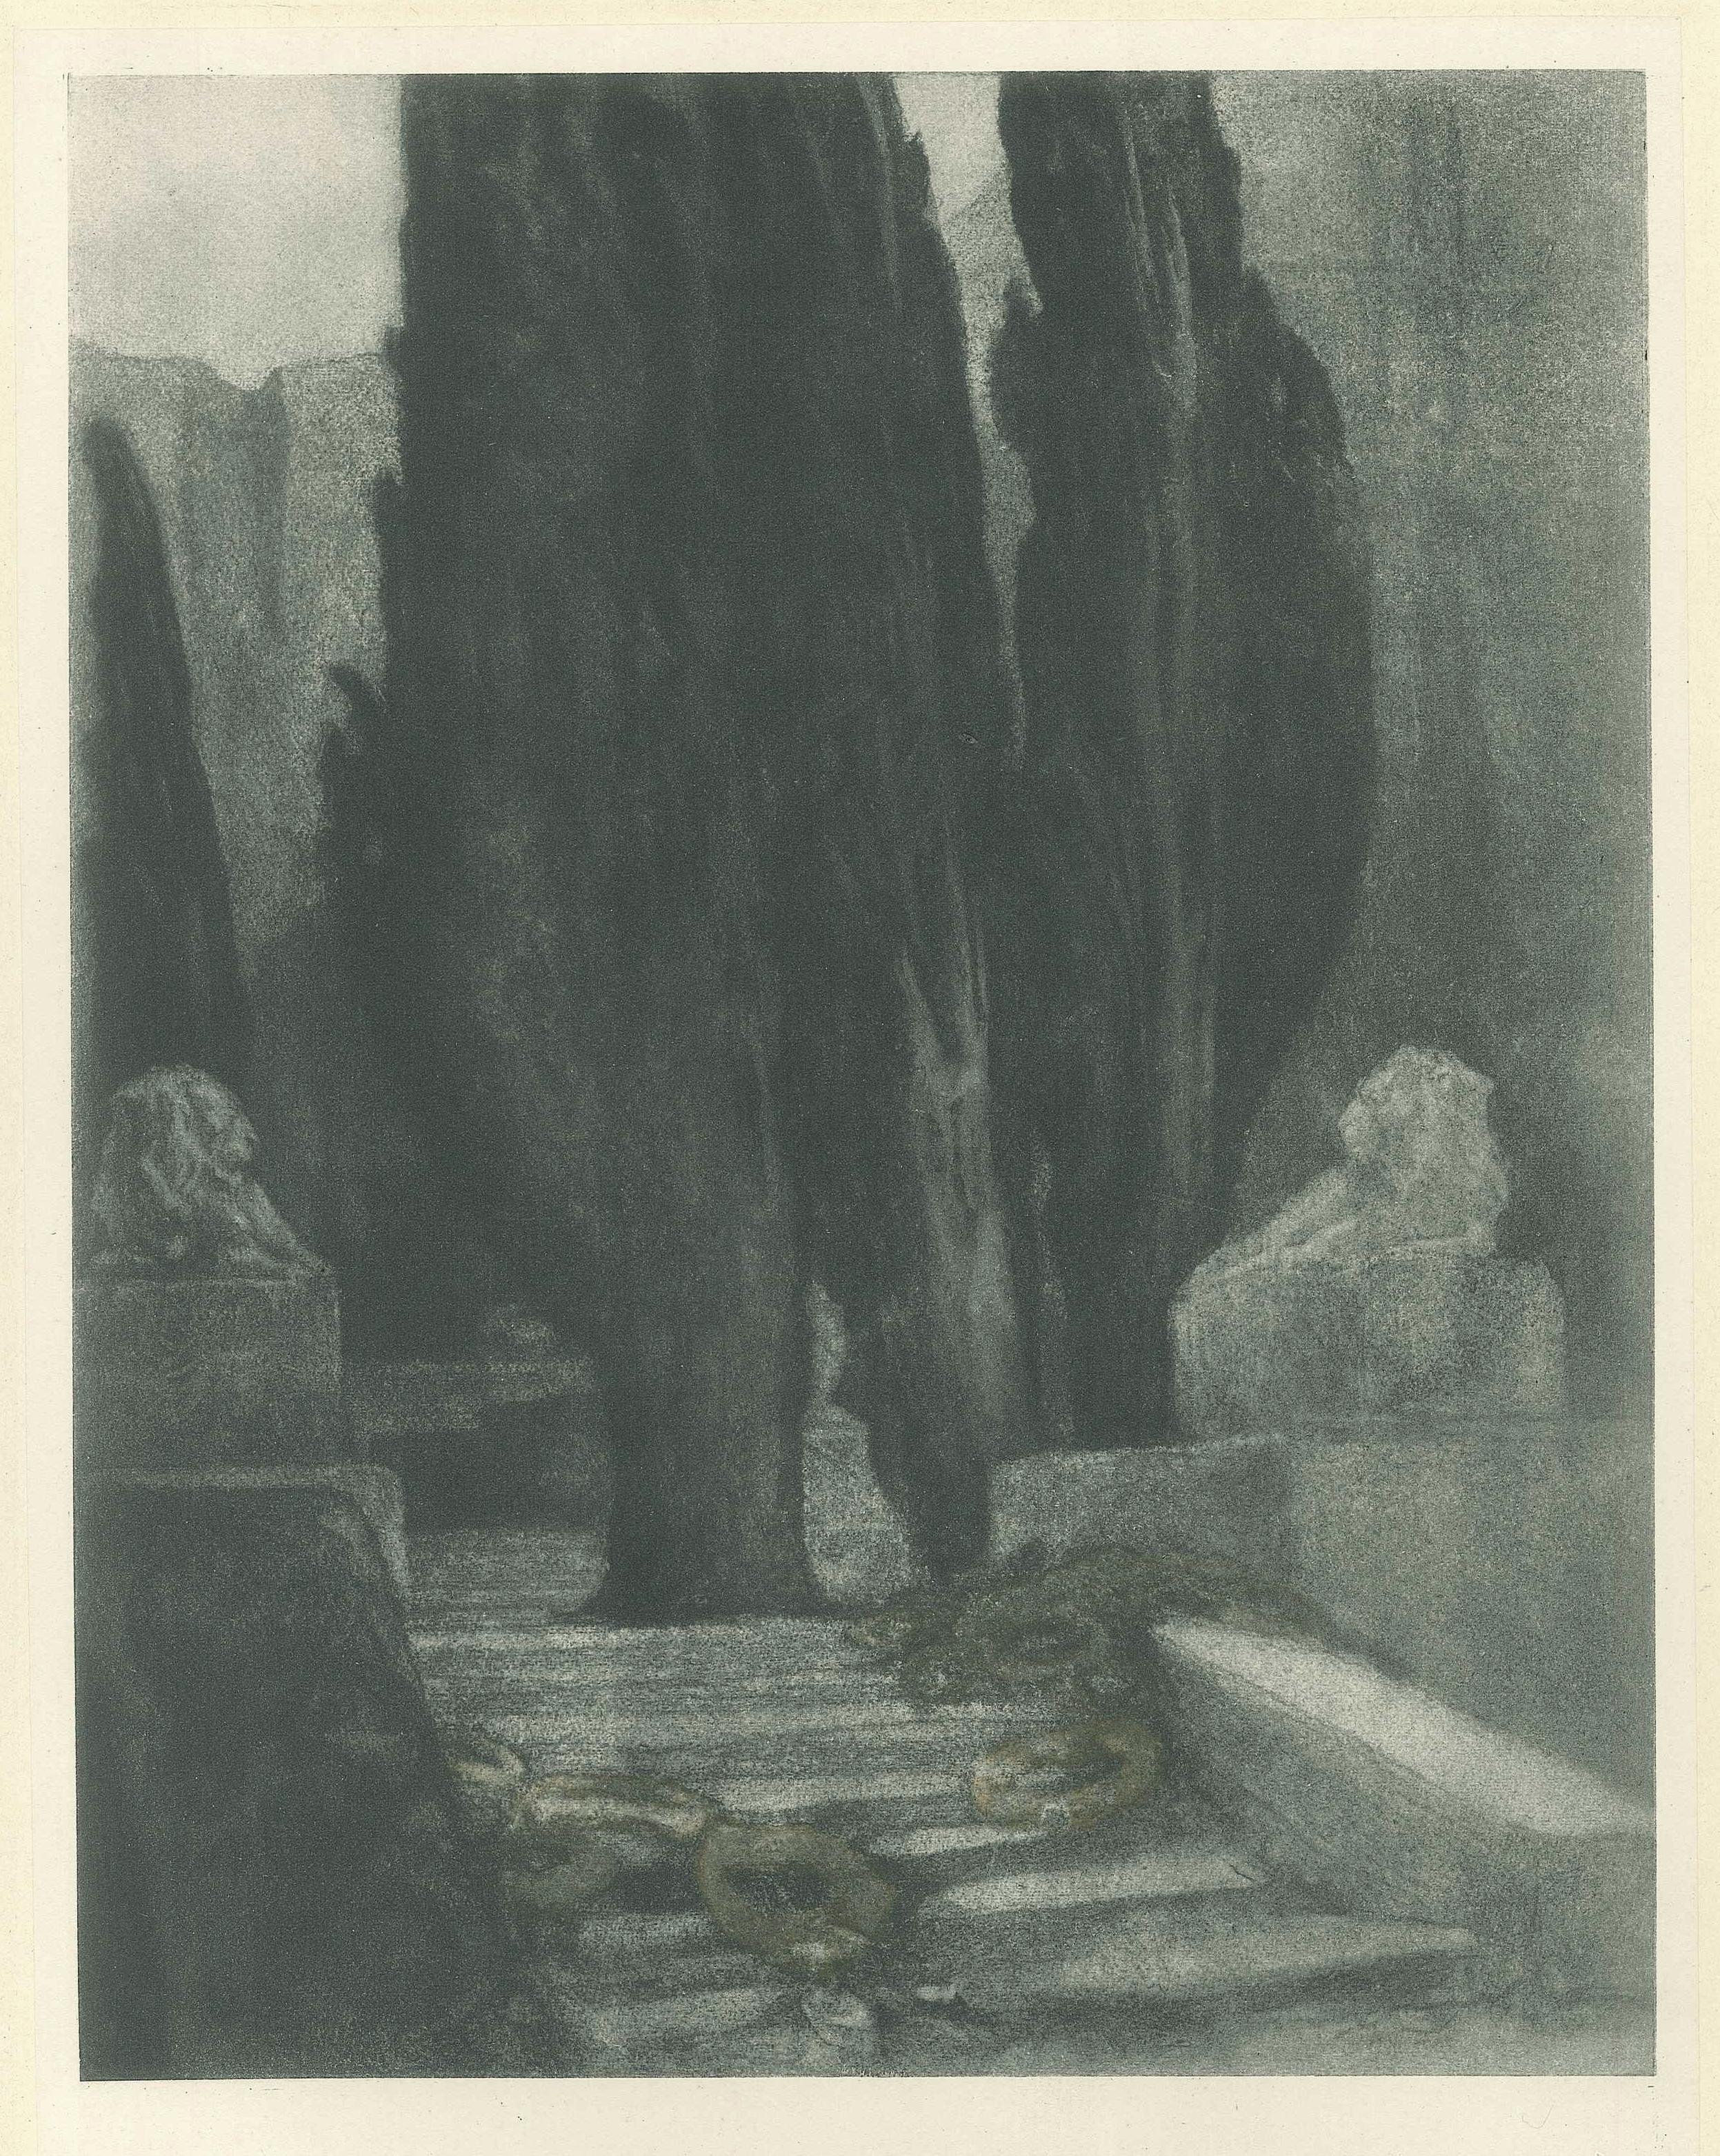 Requiem - Vintage-Hliogravur von Franz von Bayros - 1921 ca.